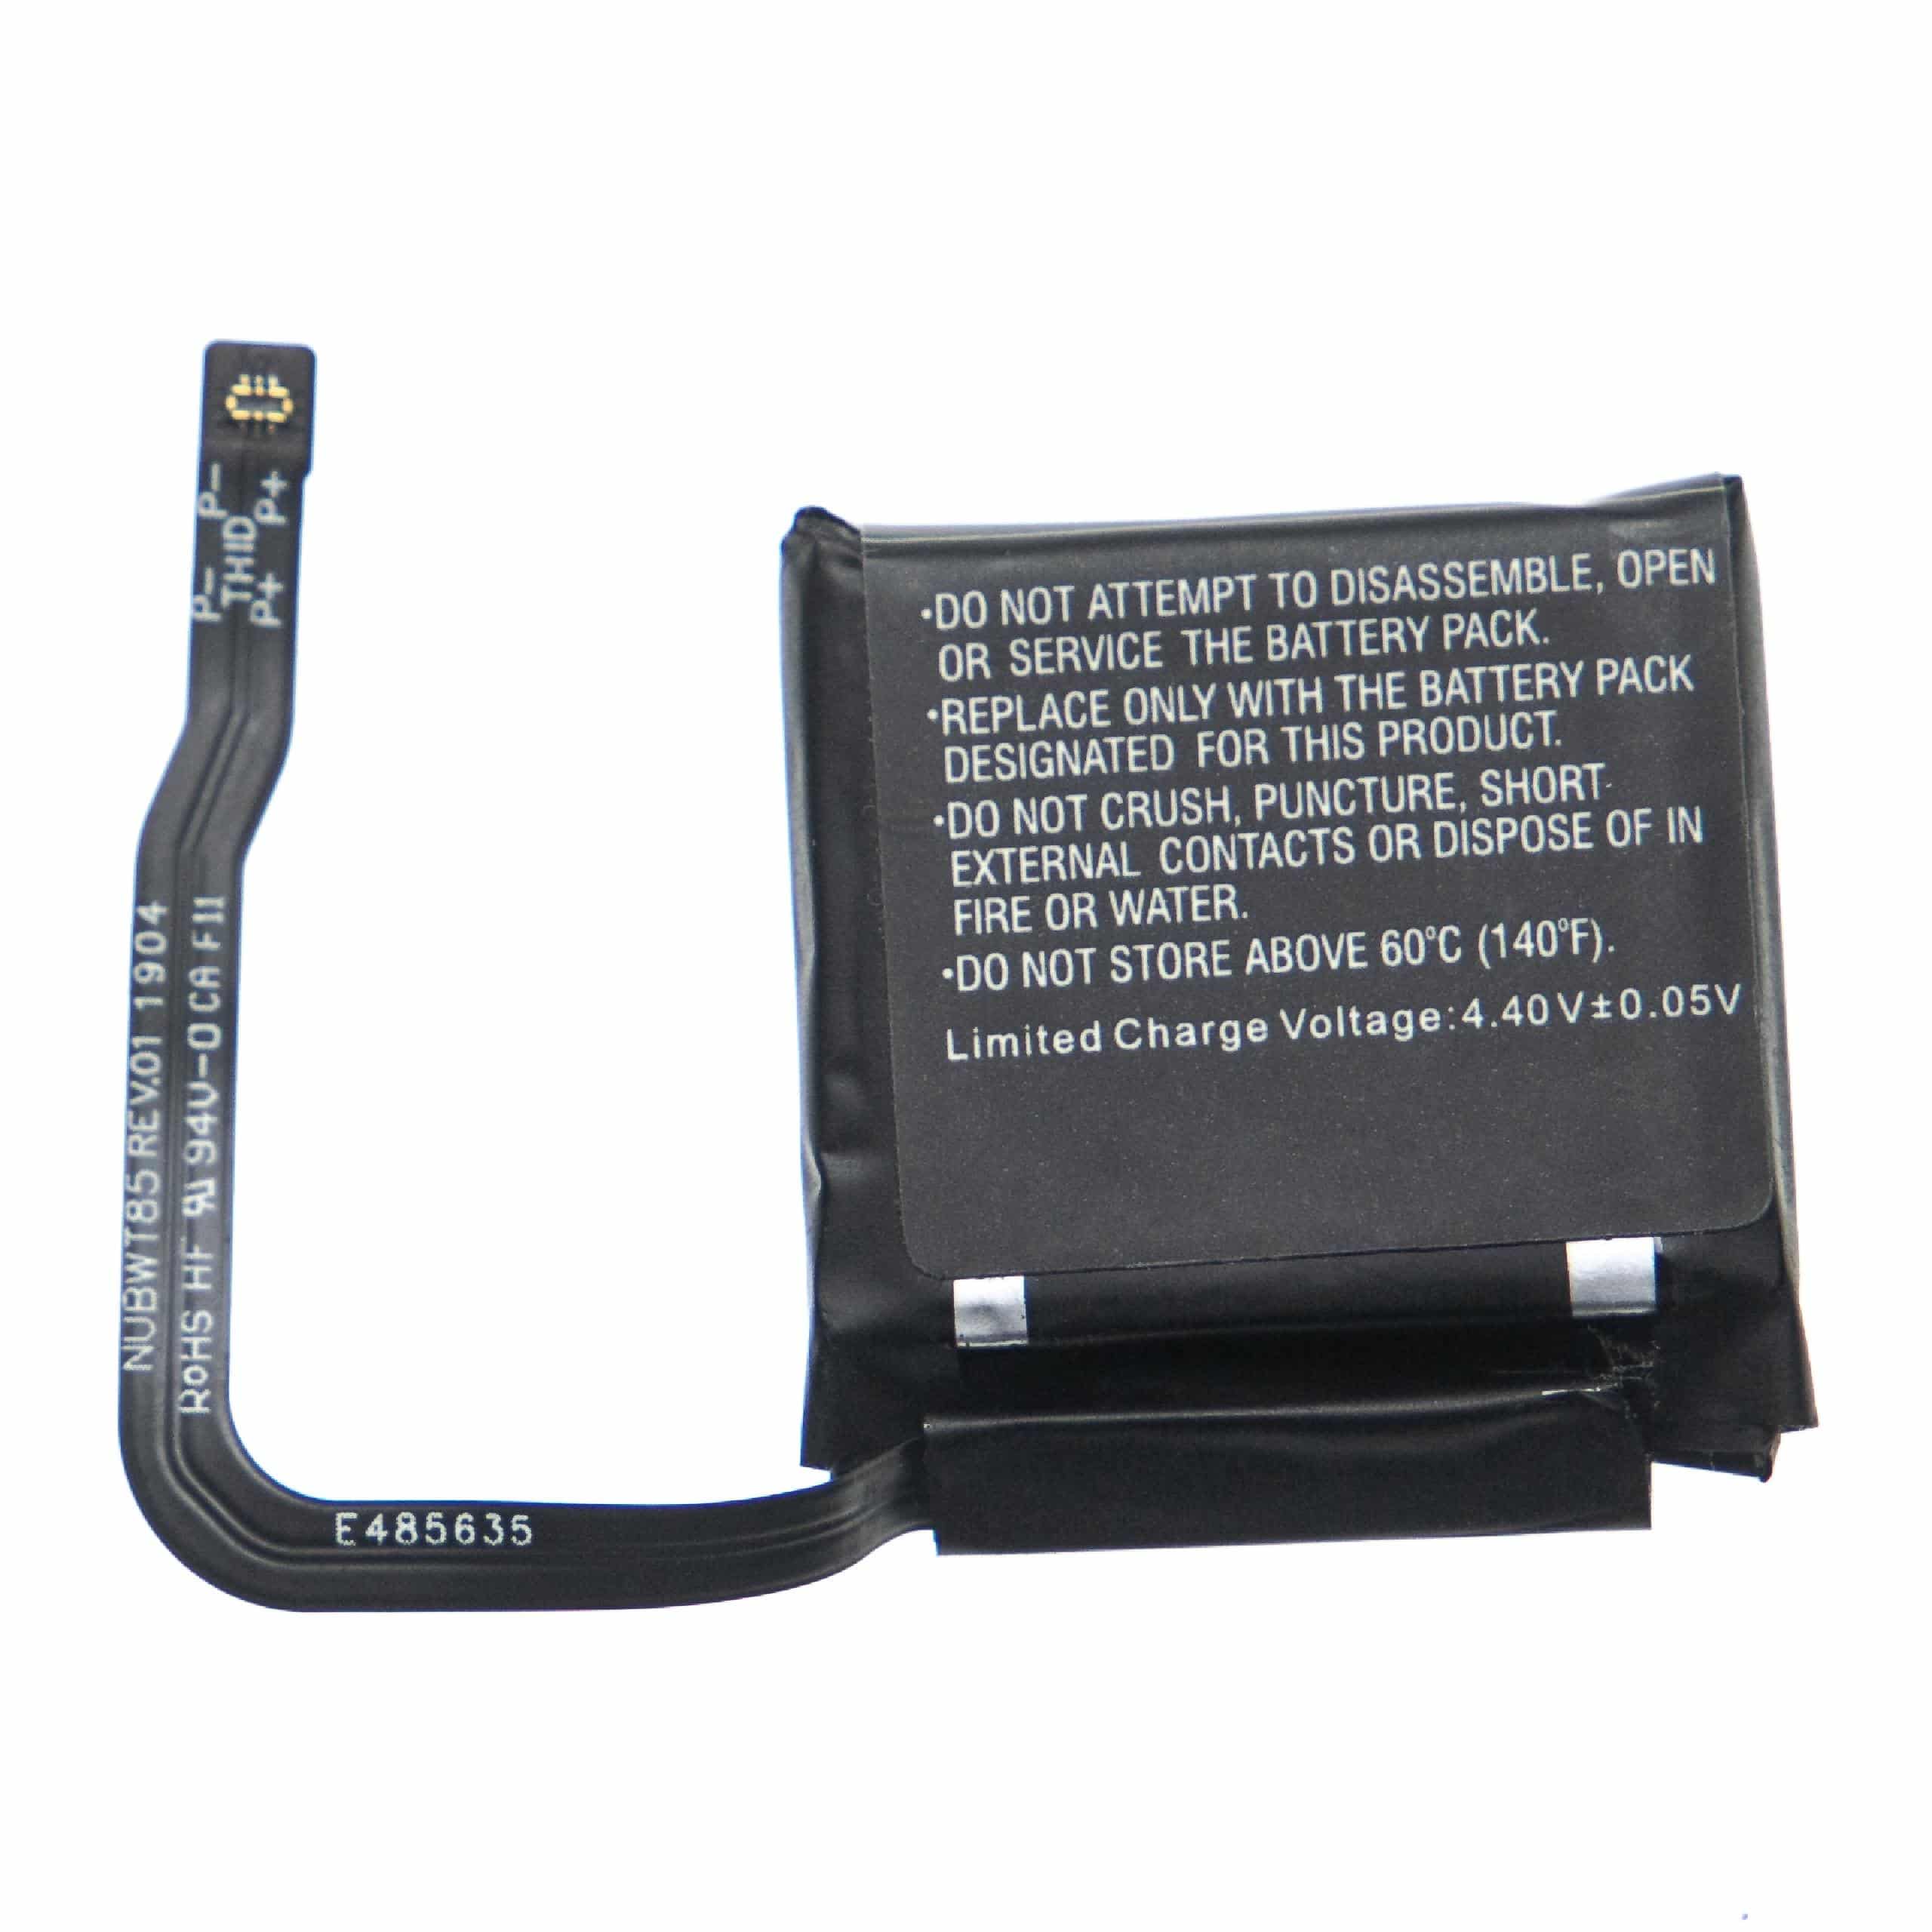 Batterie remplace Nubia Li3905T44P6h292752 pour montre connectée - 450mAh 3,85V Li-polymère